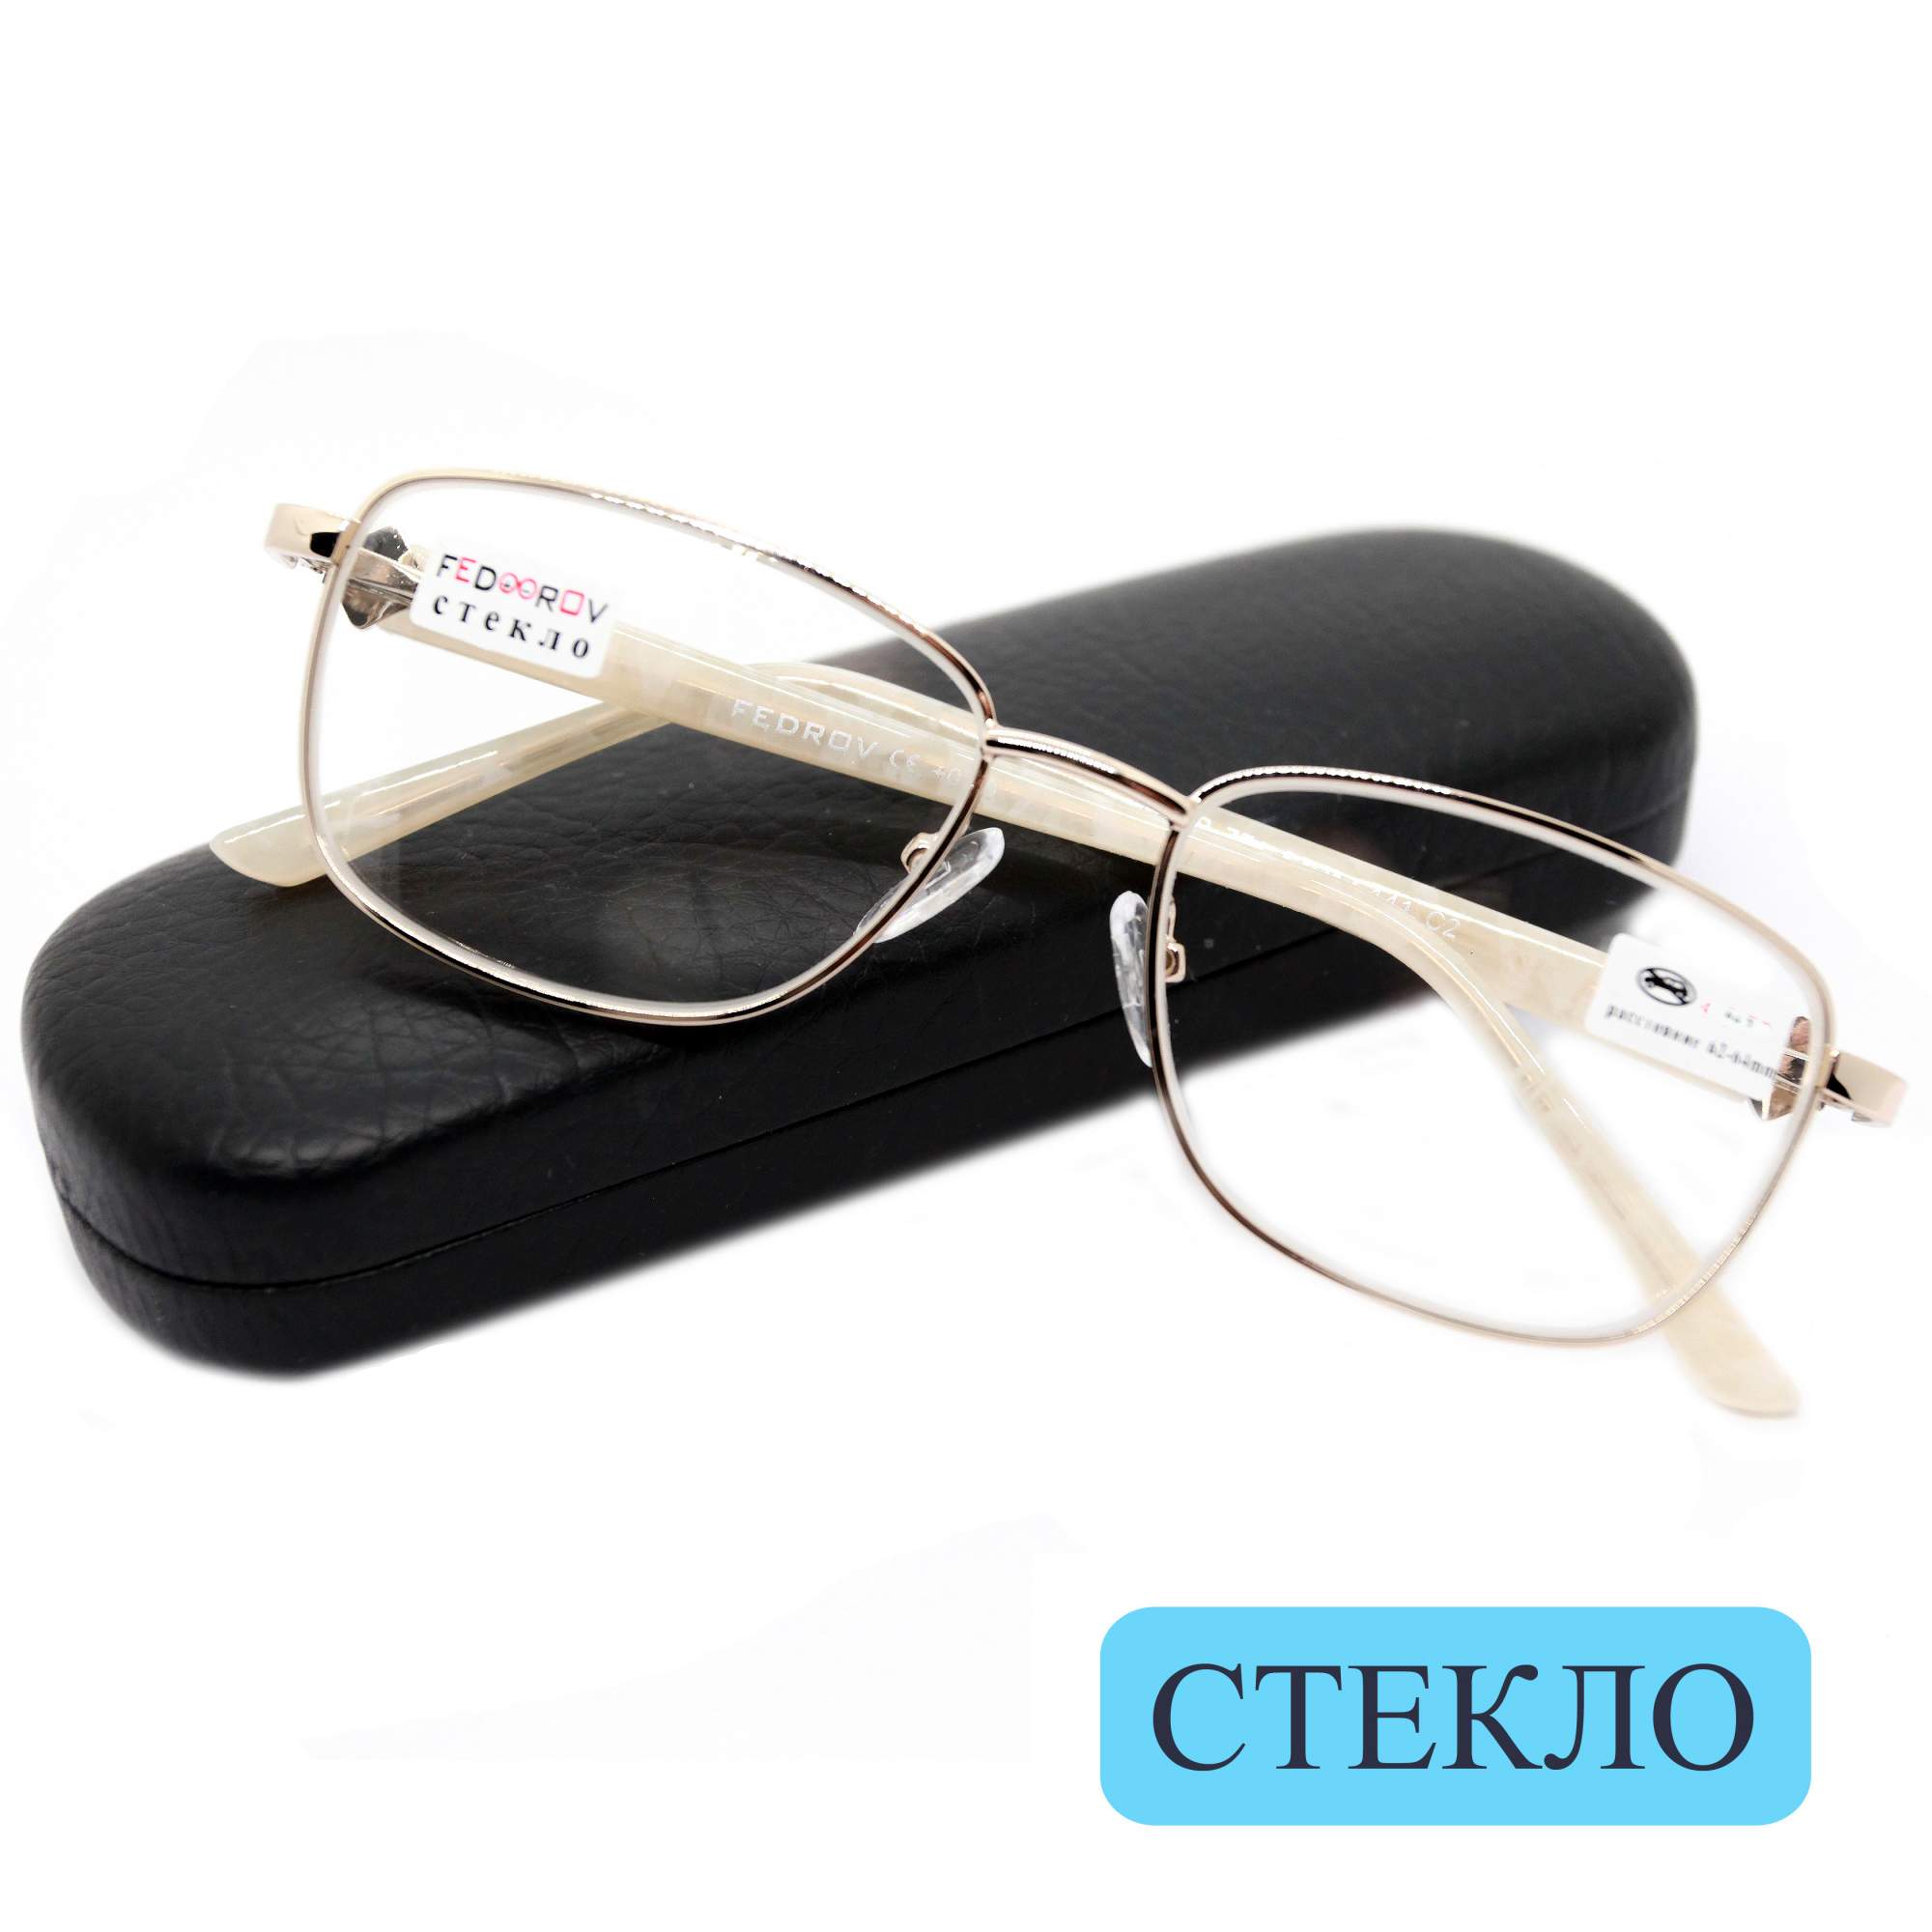 Готовые очки Fedrov 771, со стеклянной линзой, +1.75, c футляром, цвет золотой, РЦ 62-64